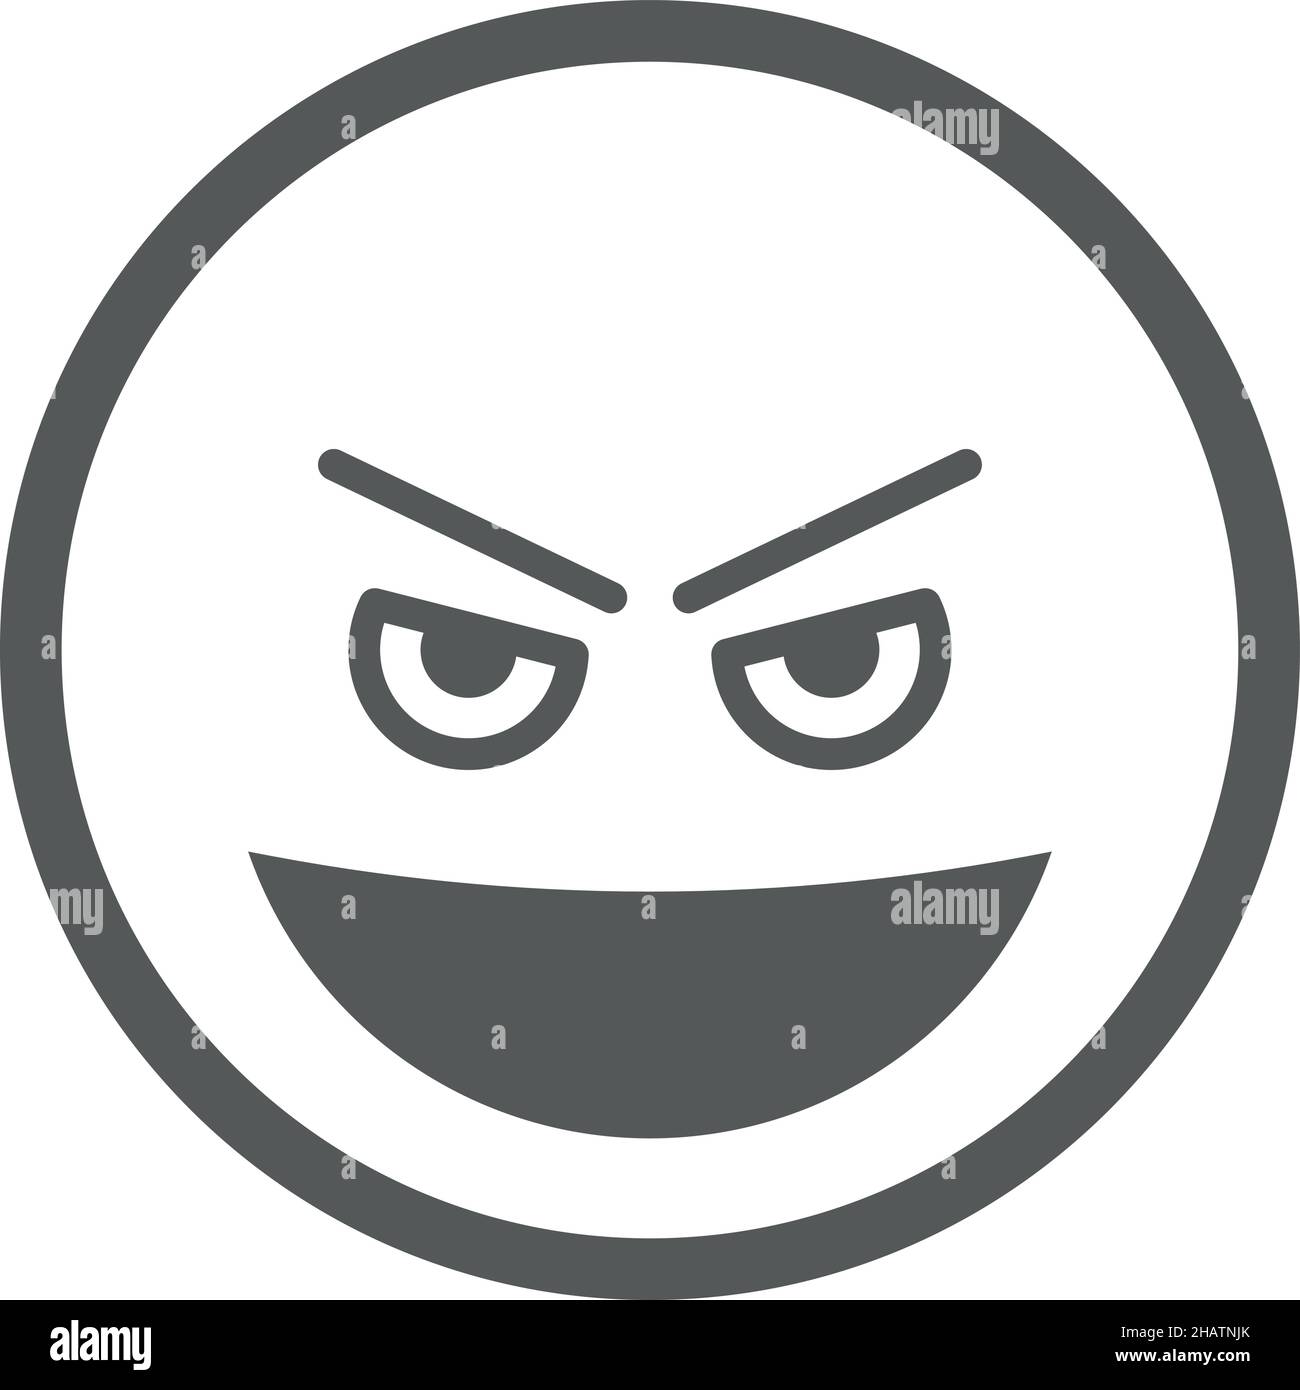 Böse Grinsen Gesicht Symbol. Böse lächelnde Emoji Stock Vektor